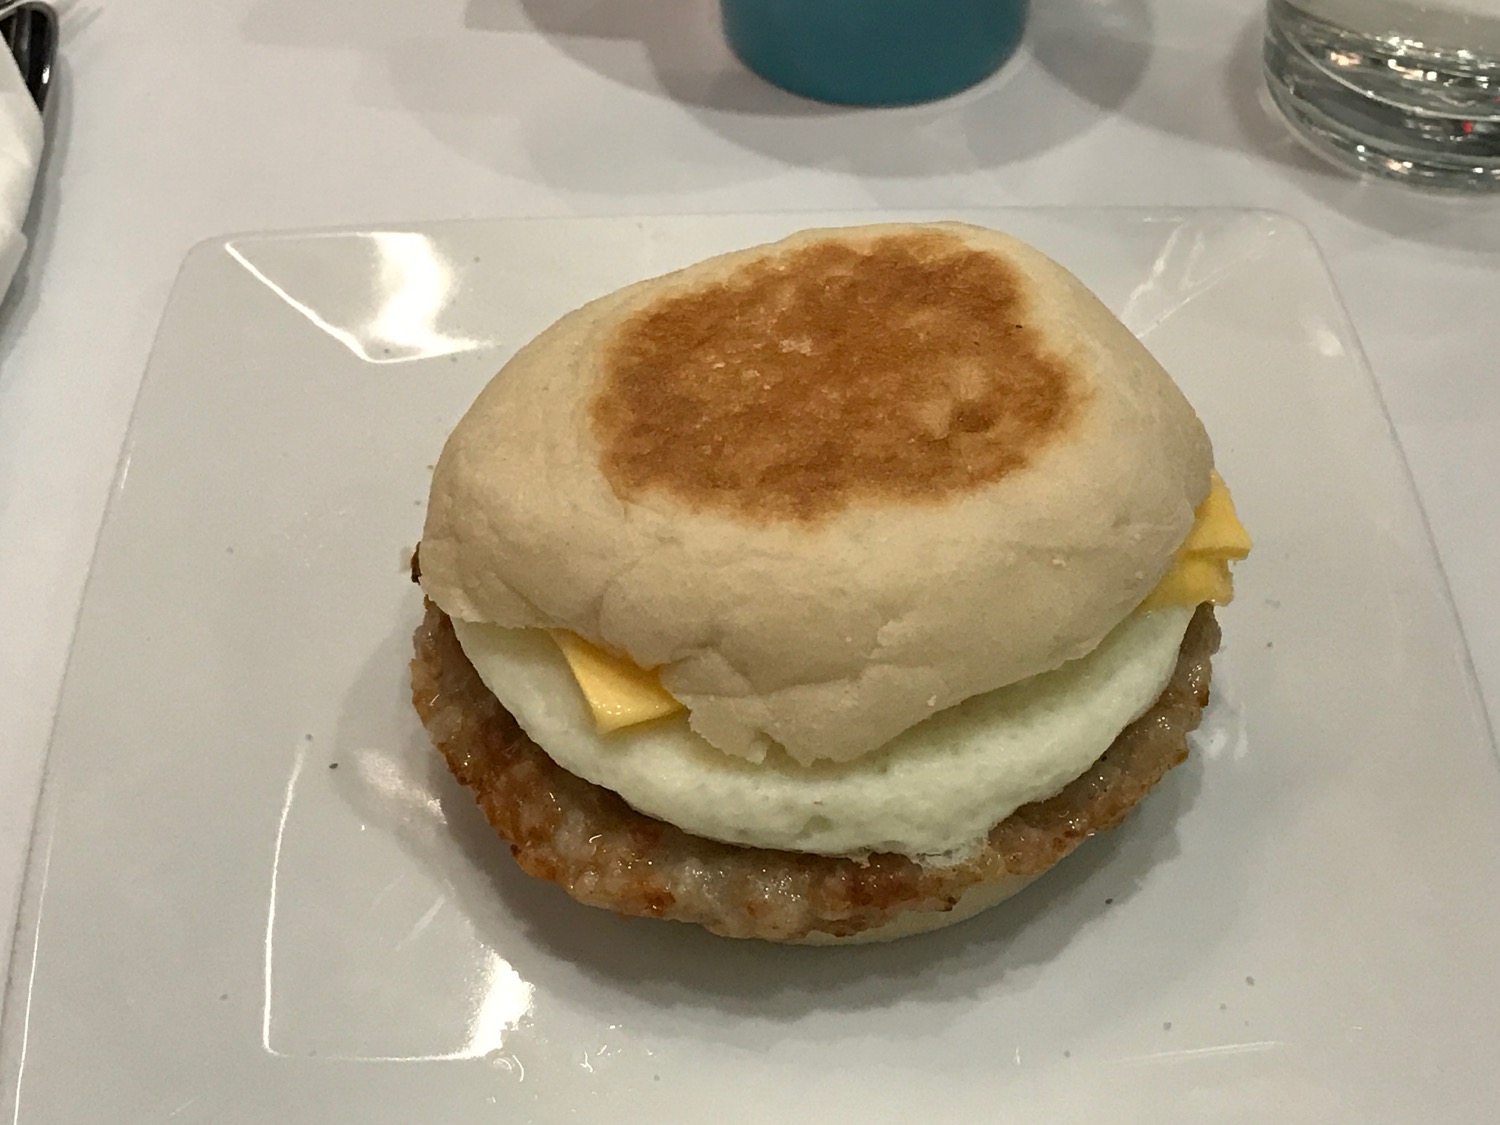 a breakfast sandwich on a plate